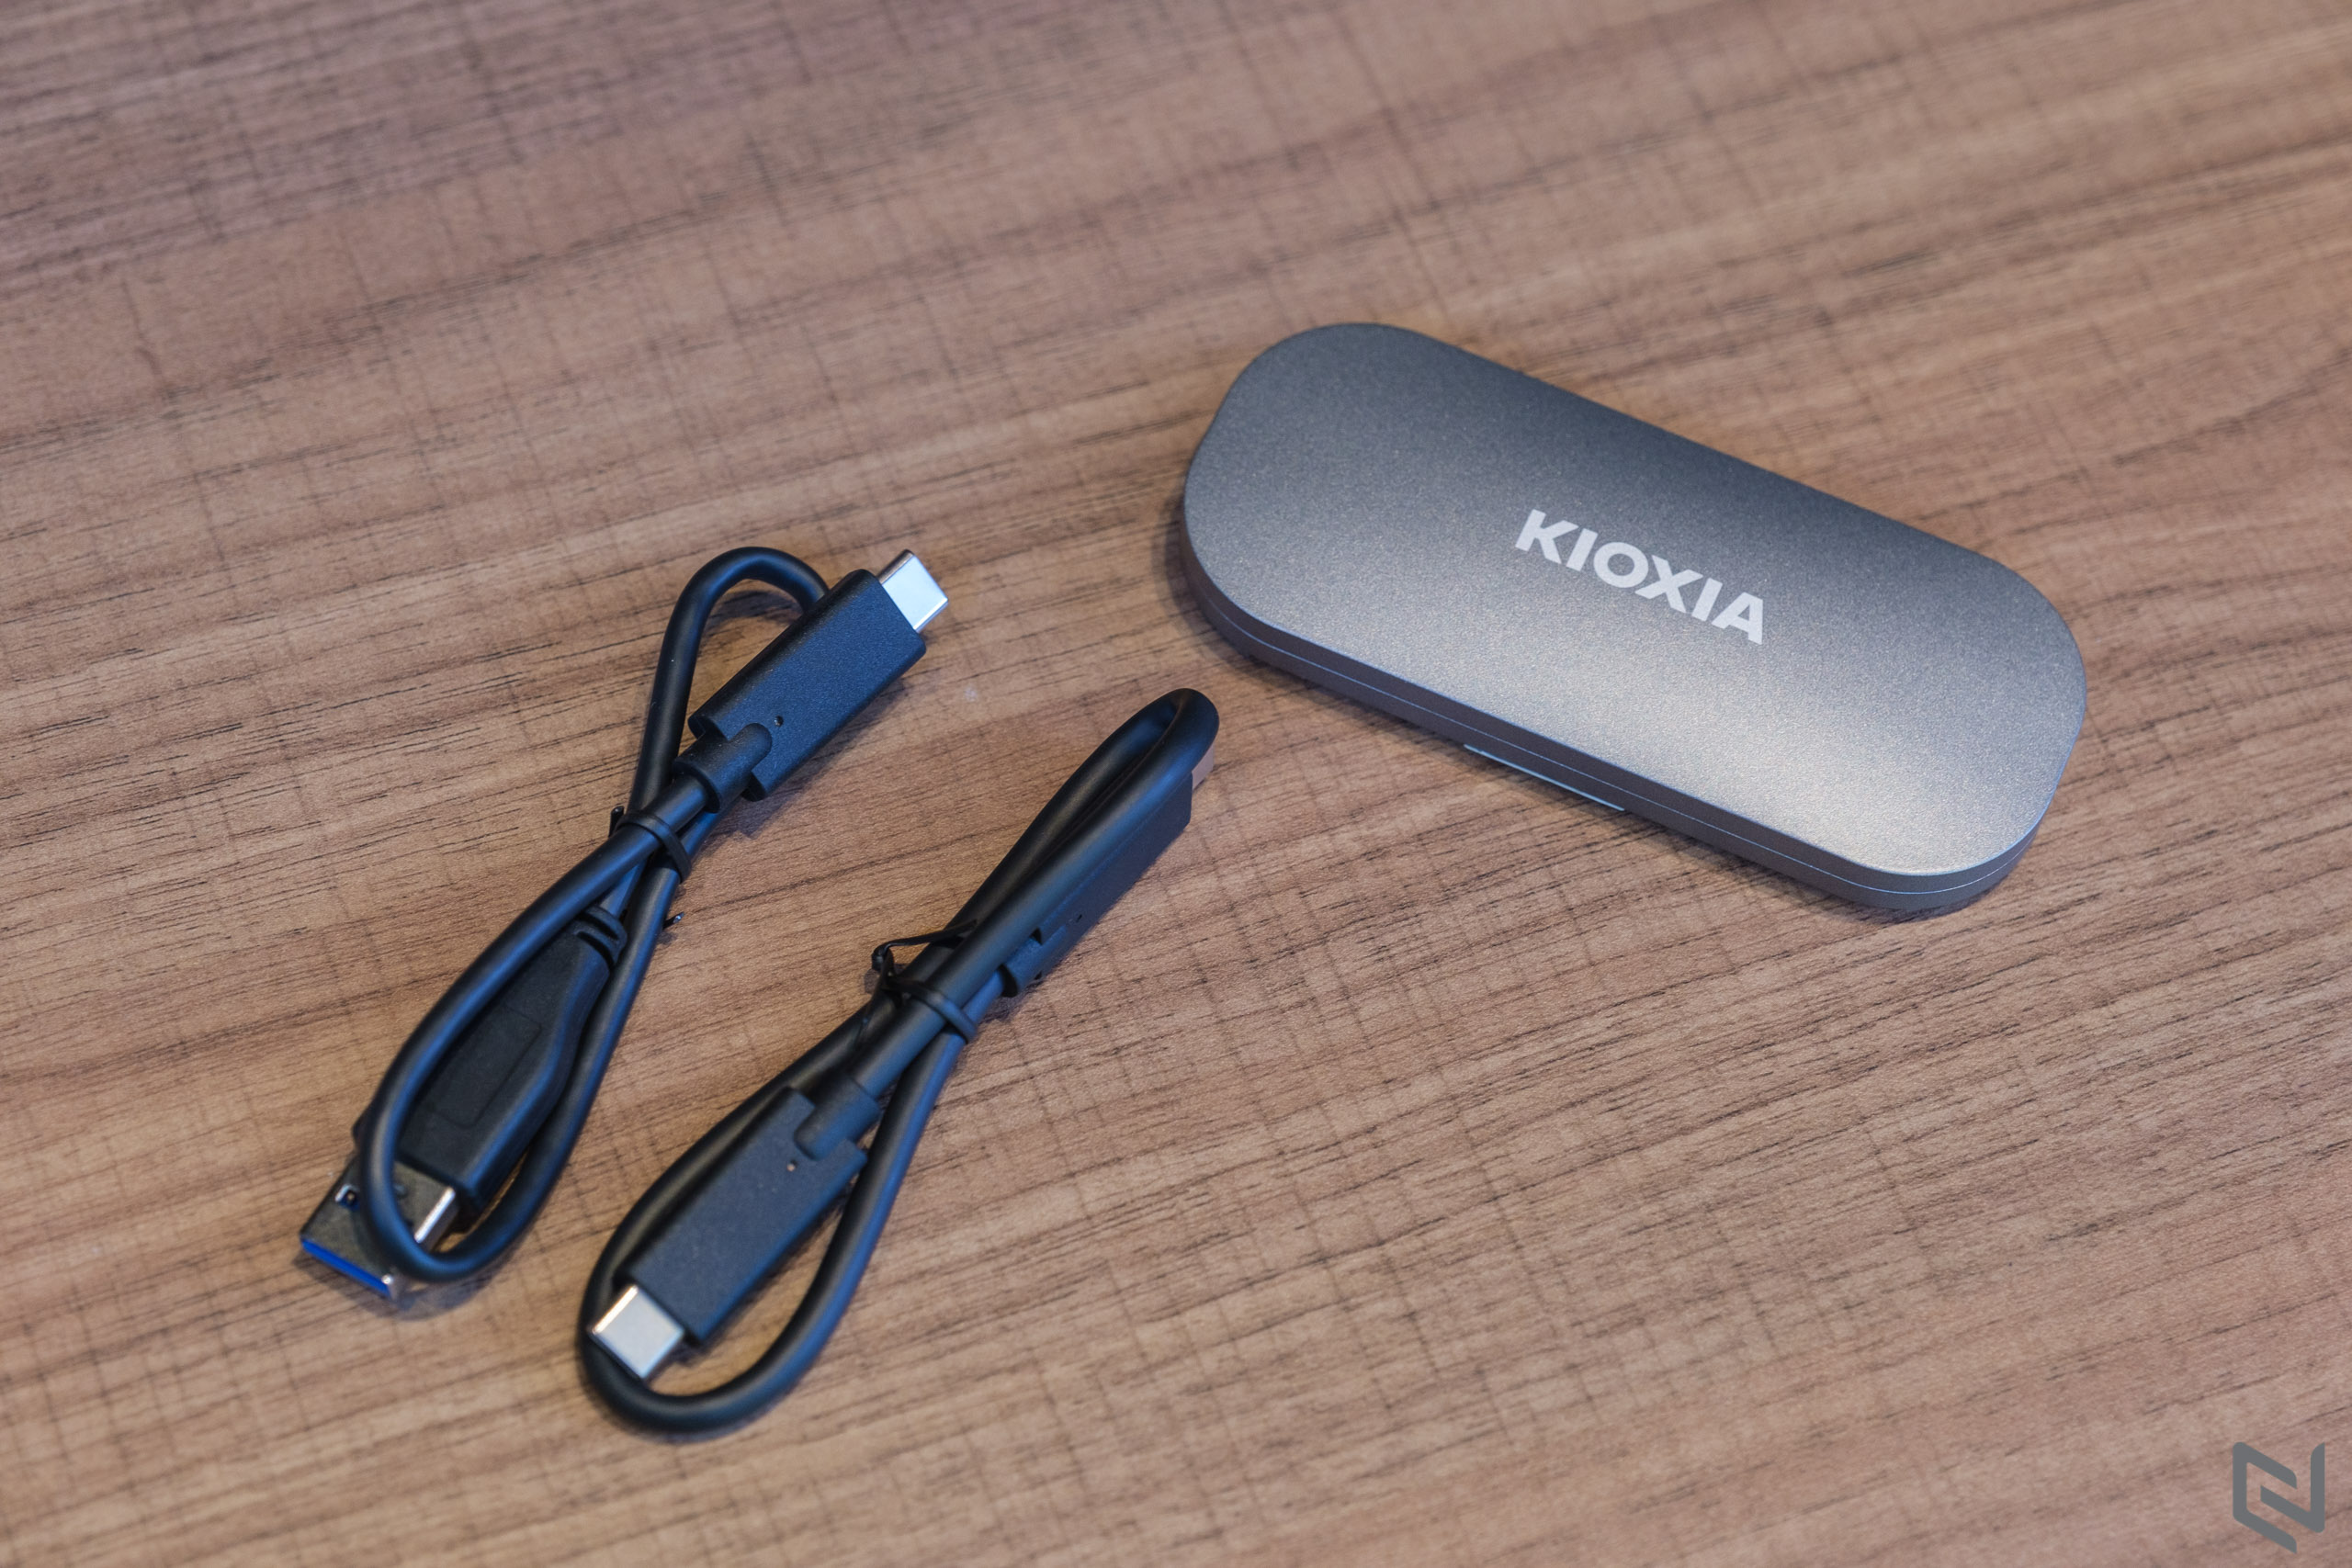 Trên tay SSD di động Kioxia Exceria Plus cùng USB TransMemory U366, bộ đôi hoàn hảo cho công việc cần lưu trữ di động